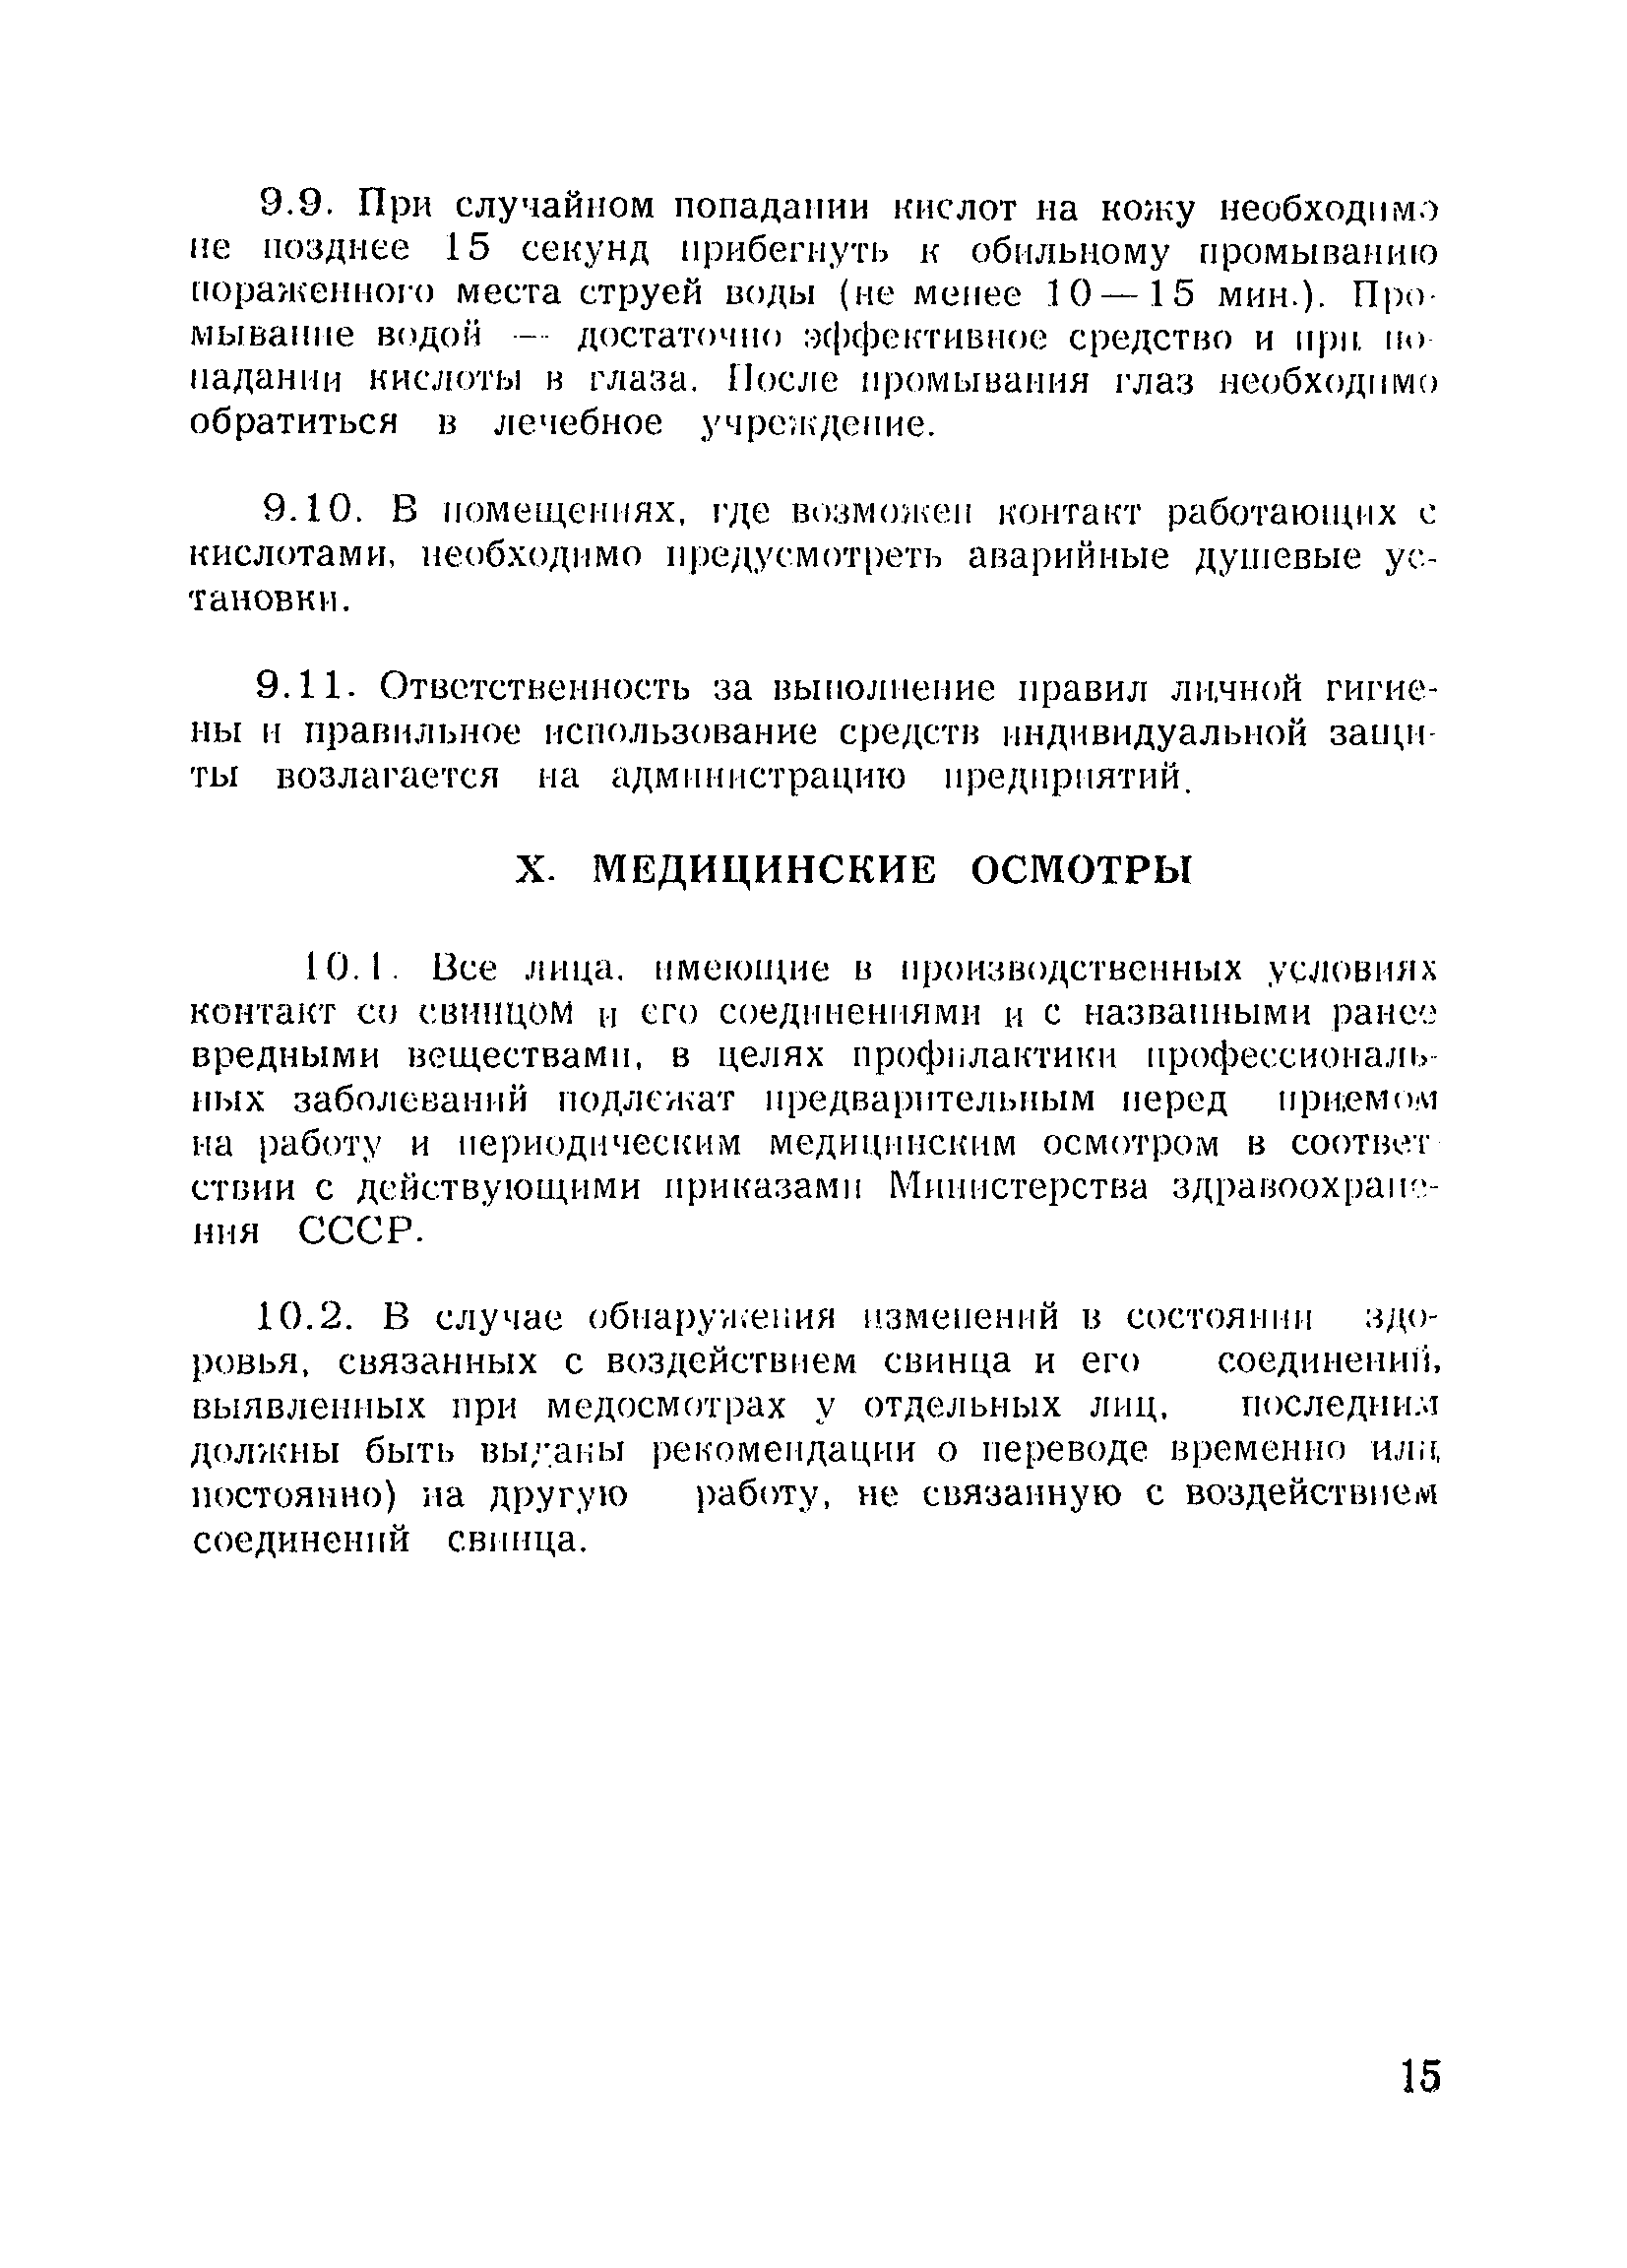 Санитарные правила 1983-79